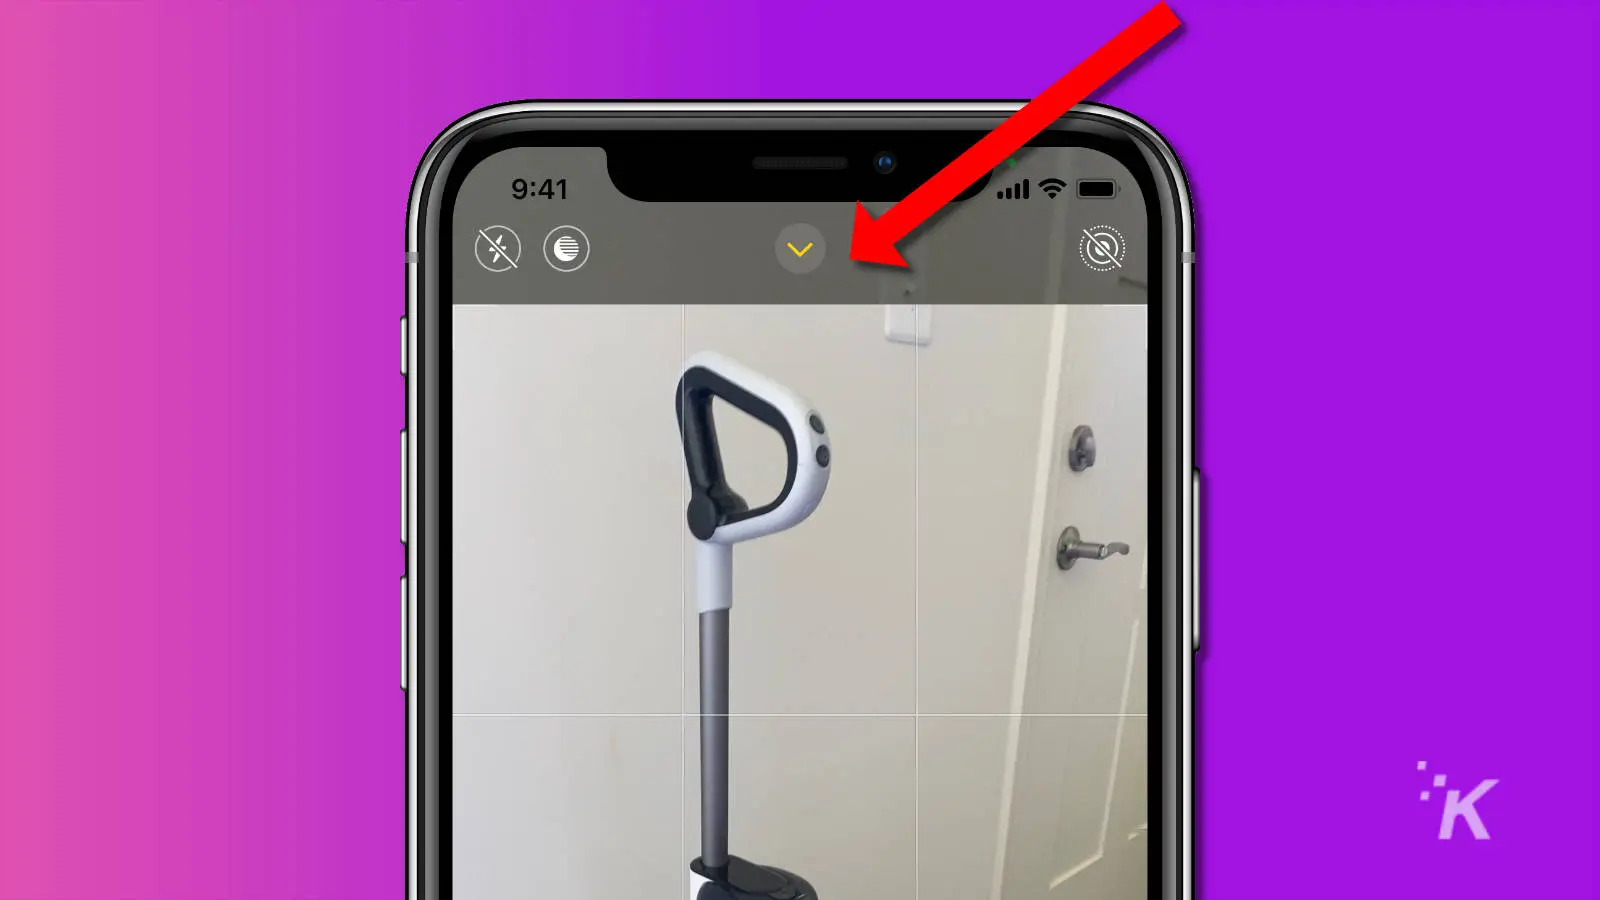 Captura de pantalla de la aplicación de la cámara del iPhone que muestra el ícono de flecha hacia arriba para acceder a la configuración